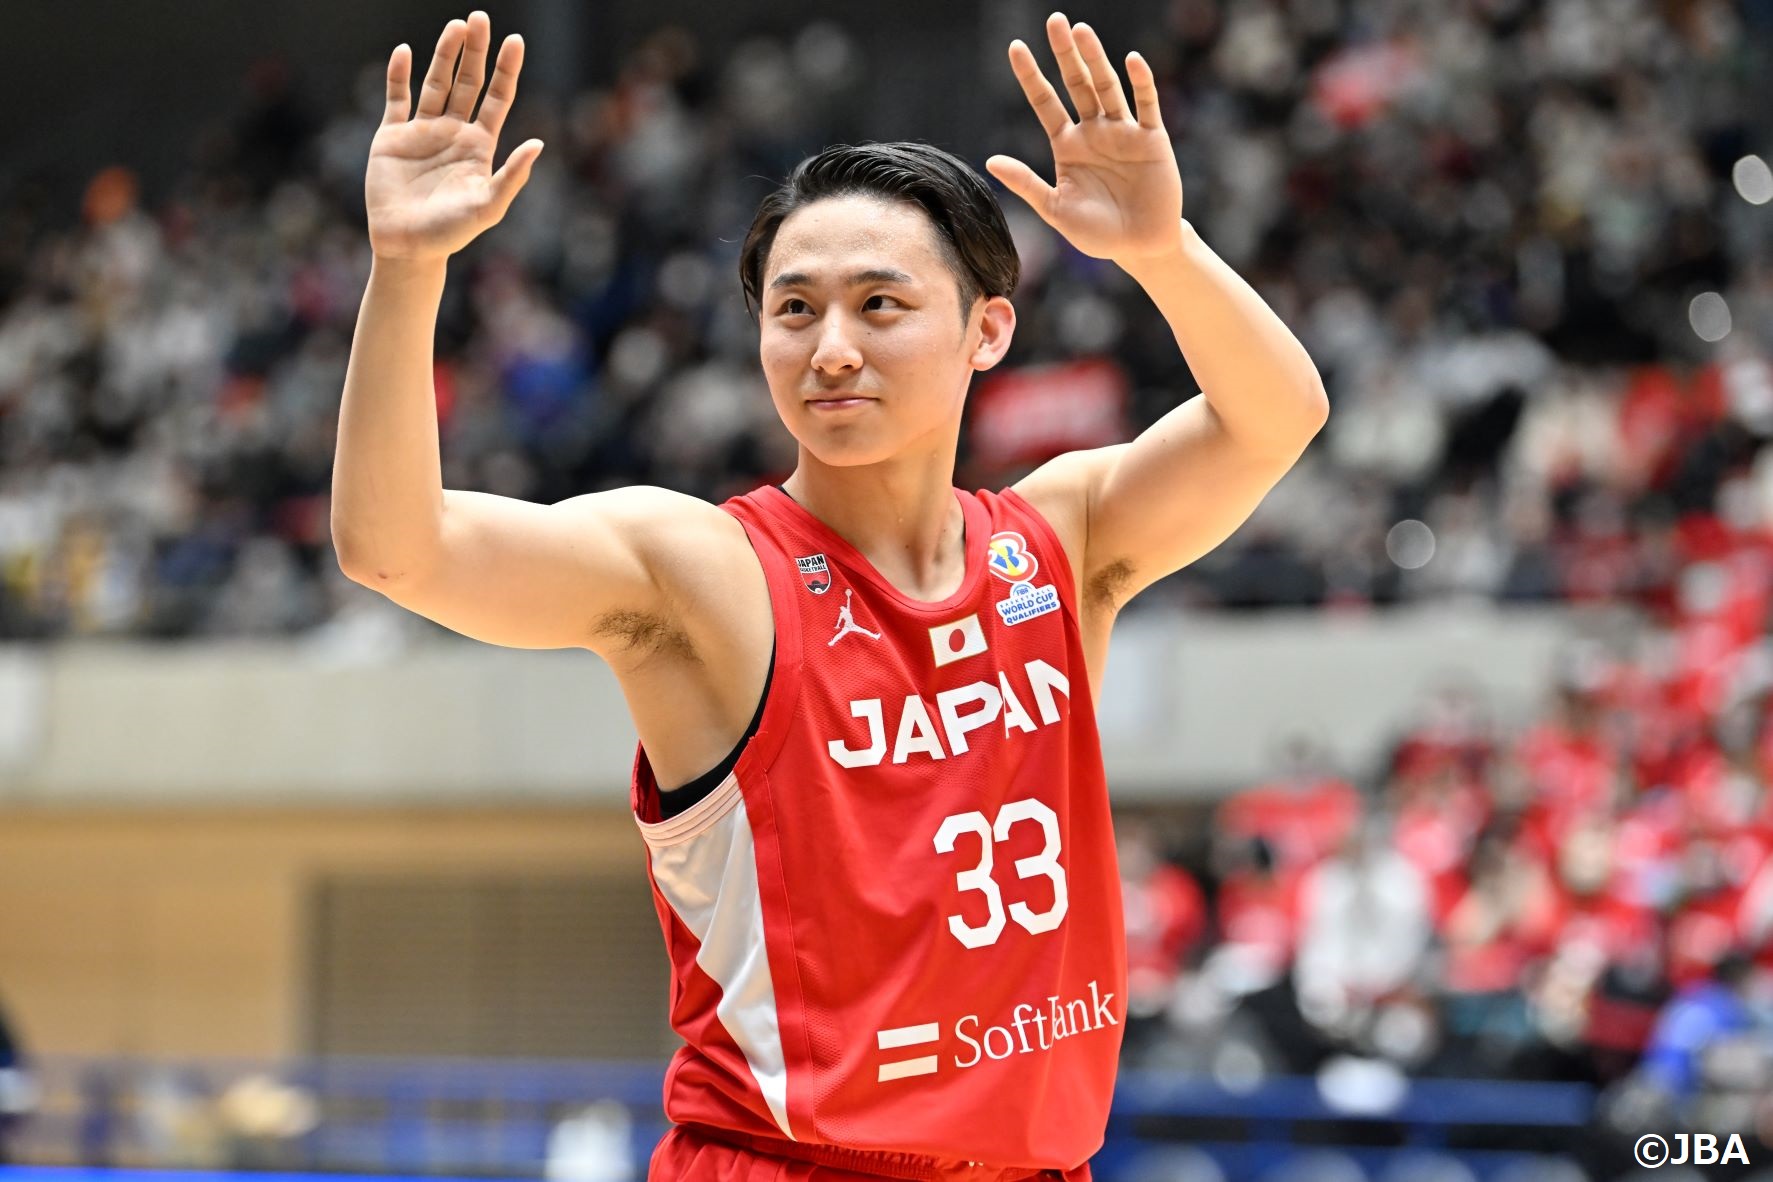 バスケットボール日本代表 (@JAPAN_JBA) / Twitter